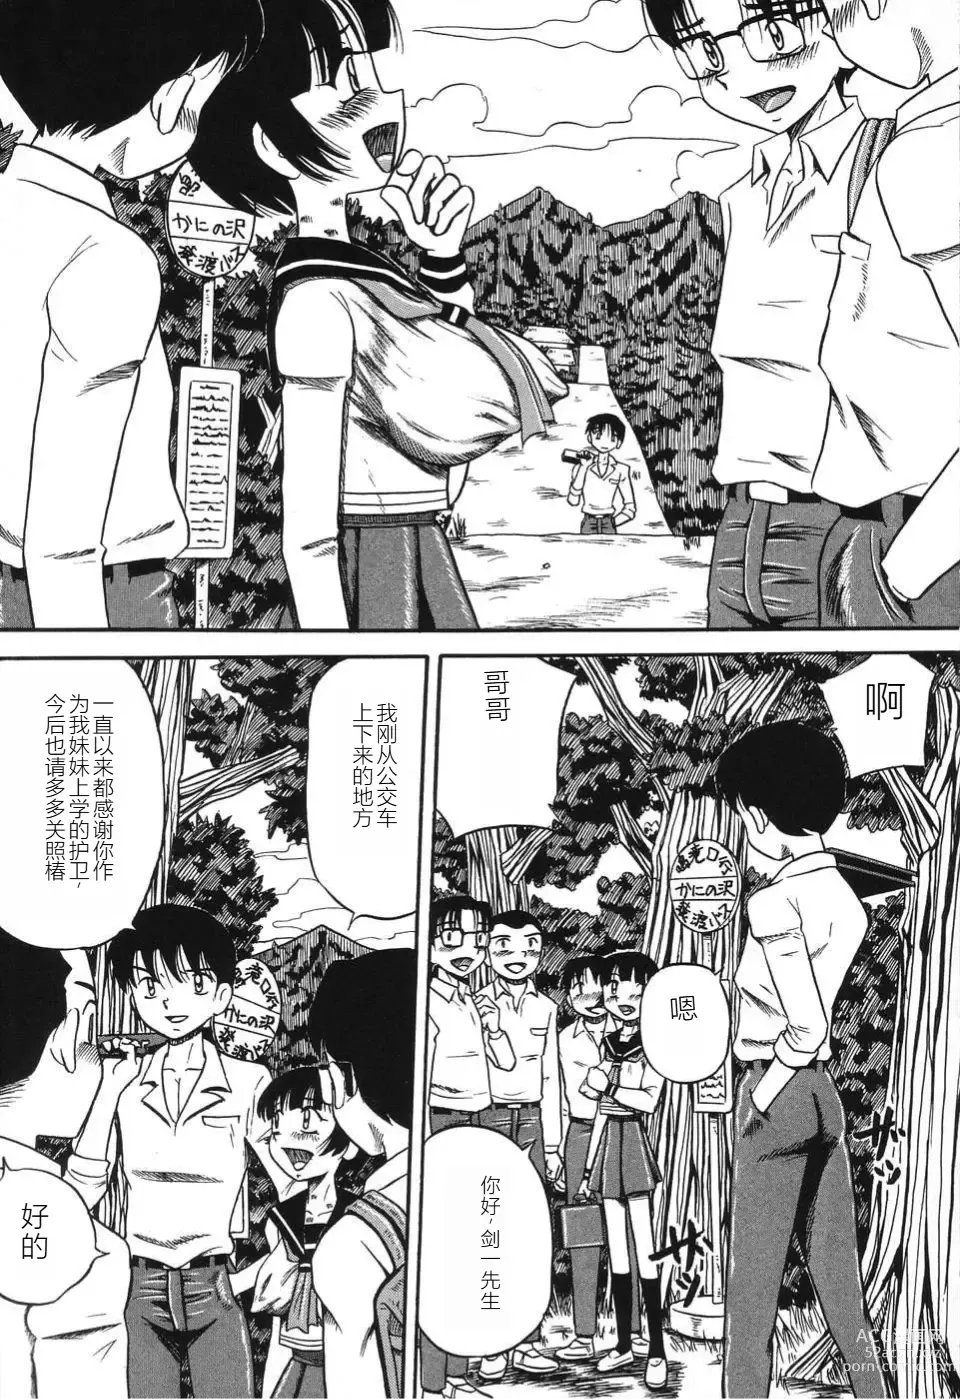 Page 145 of manga Imouto Bakunyuu Shibori